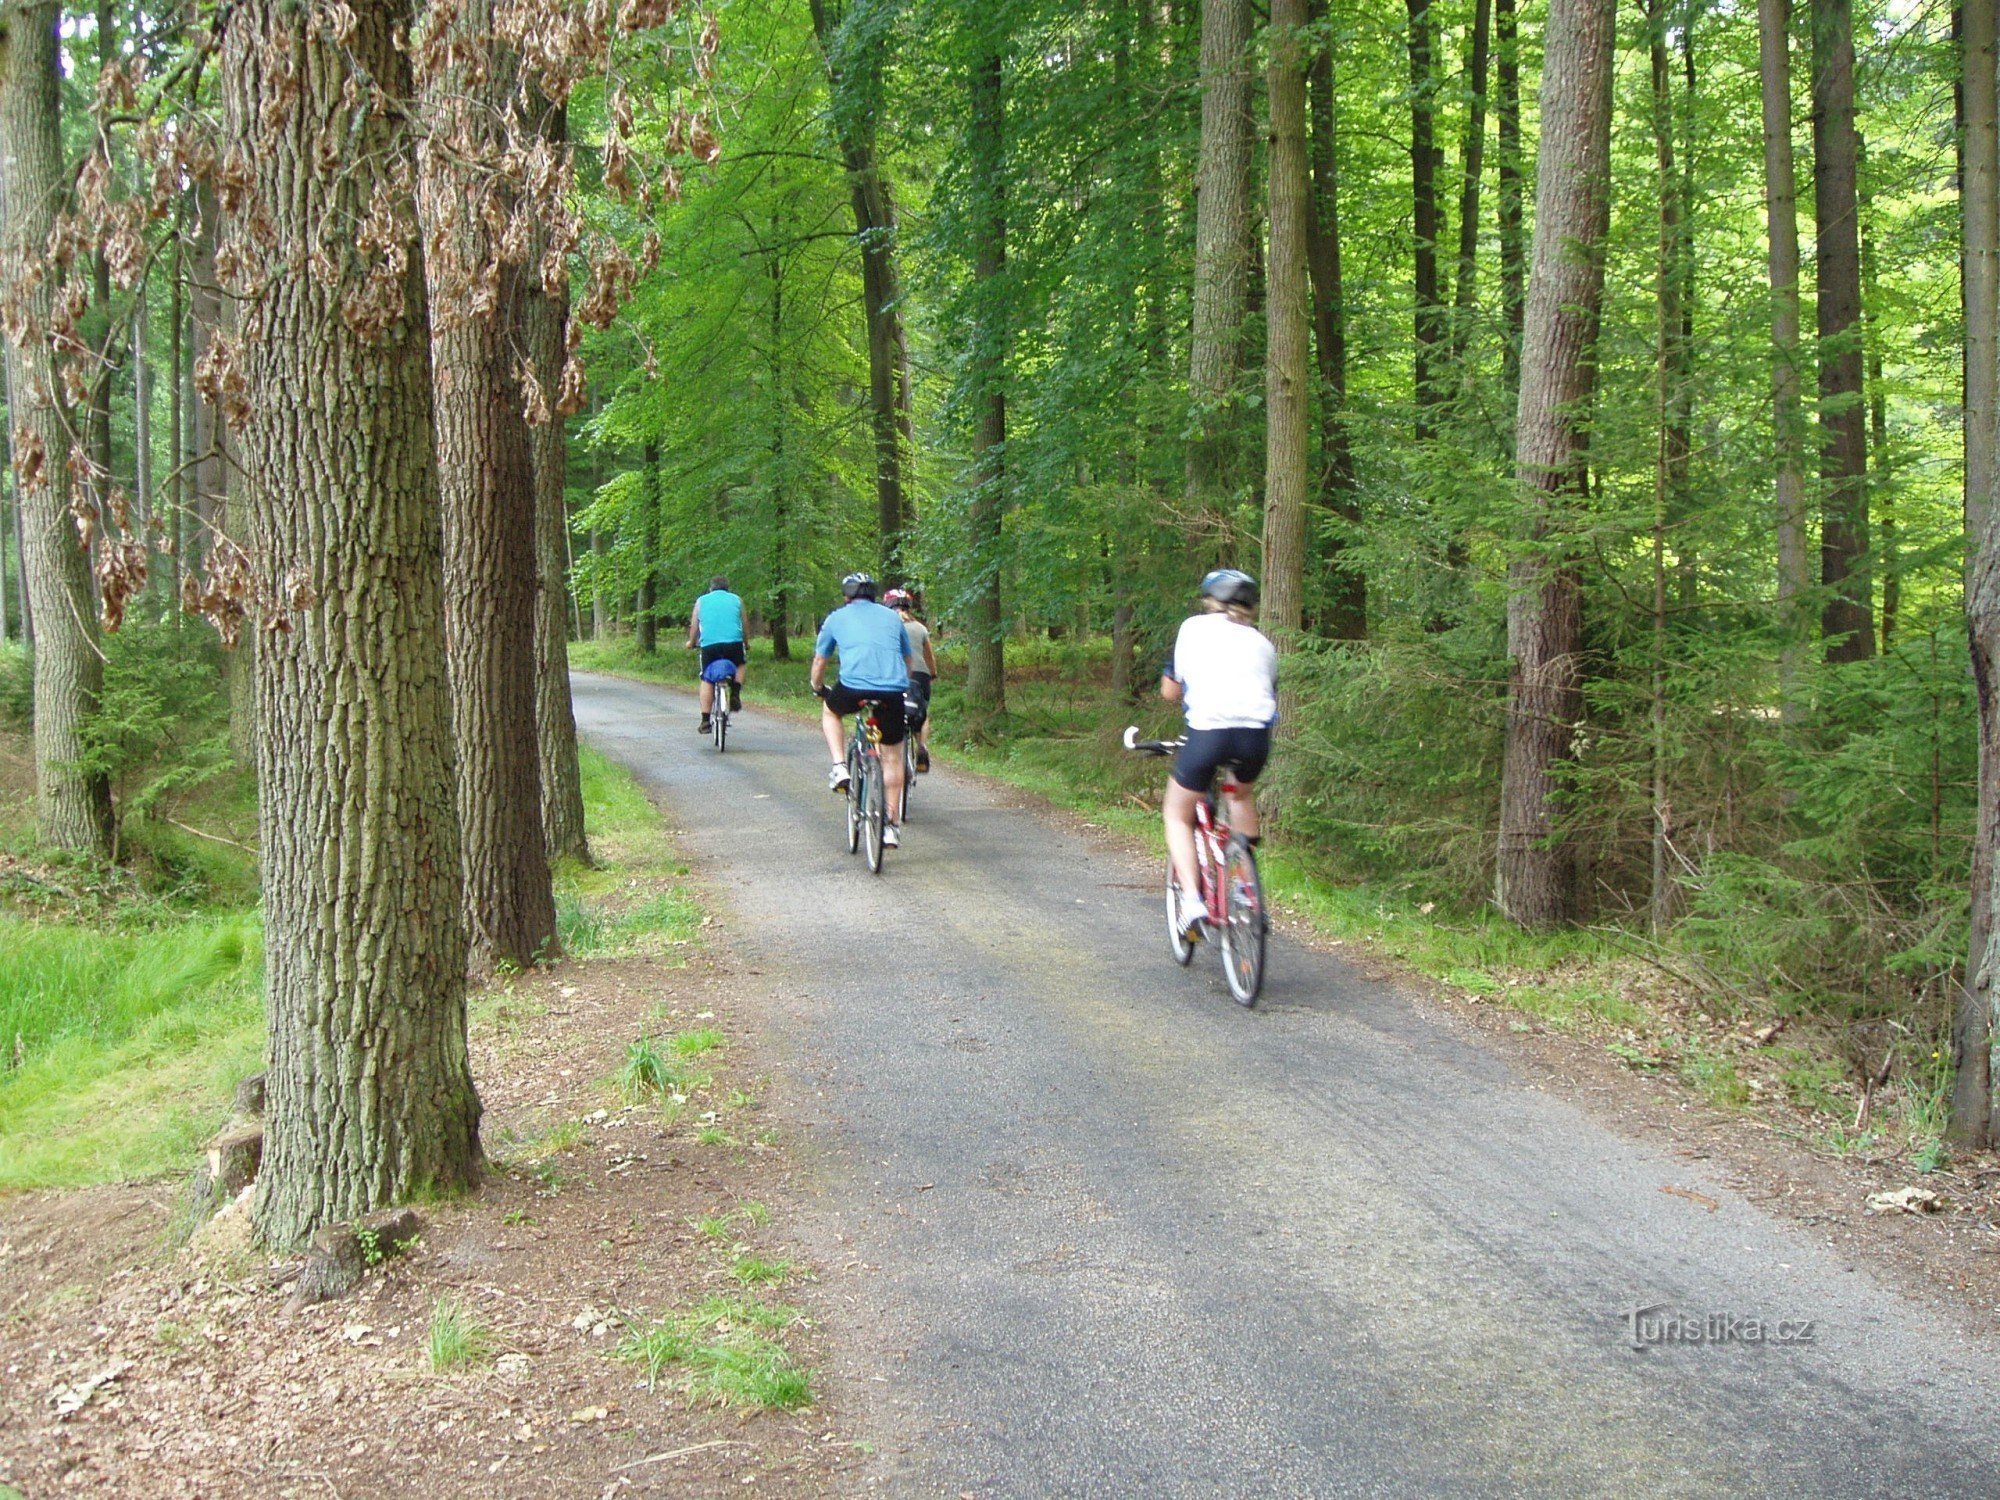 Drumurile forestiere pavate sunt ideale pentru ciclism în regiunea Třeboň